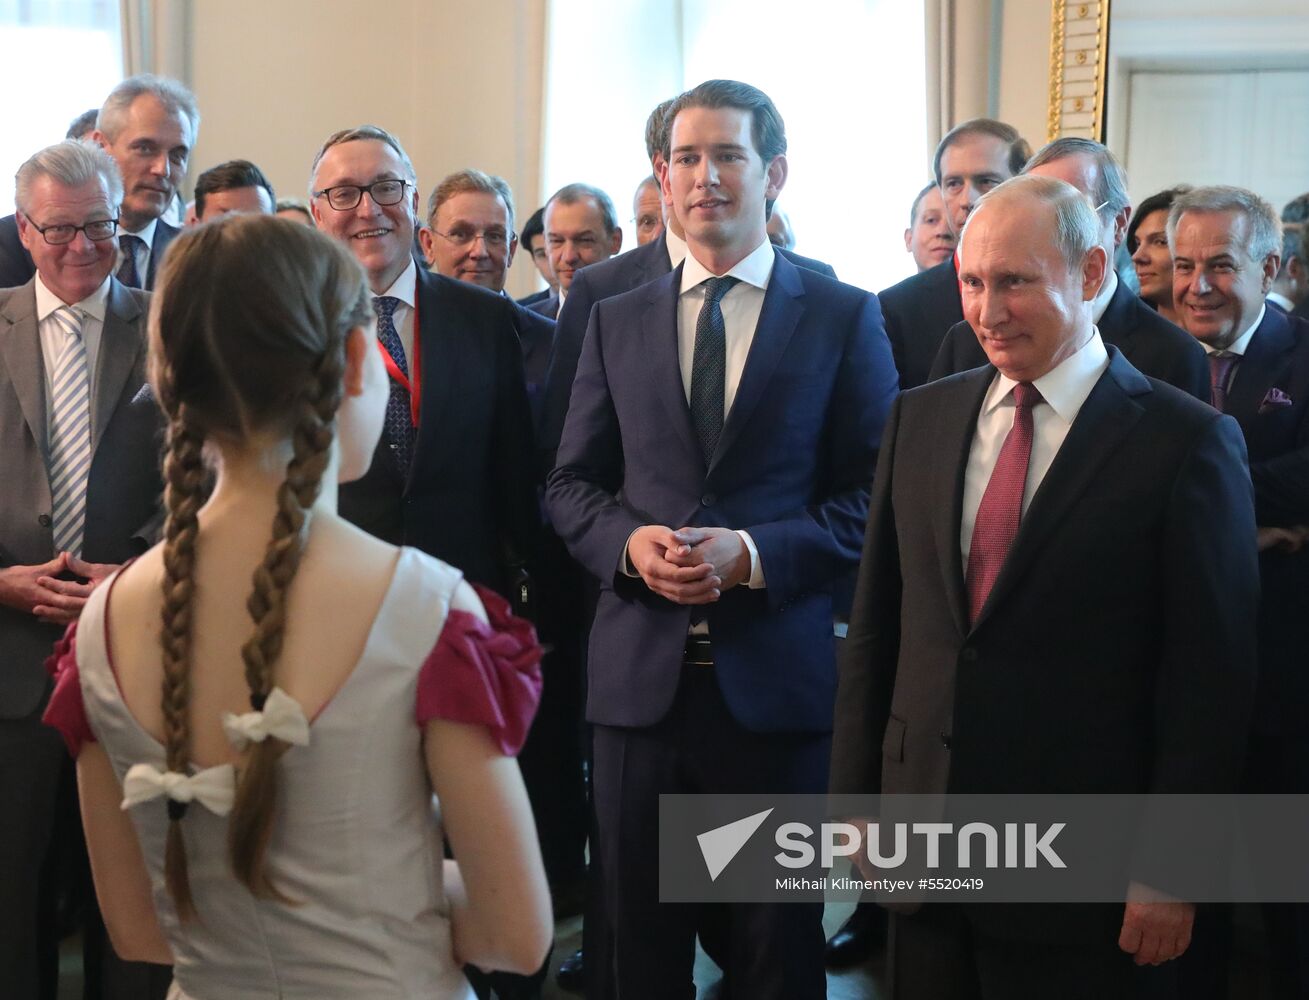 Vladimir Putin pays working visit to Austria